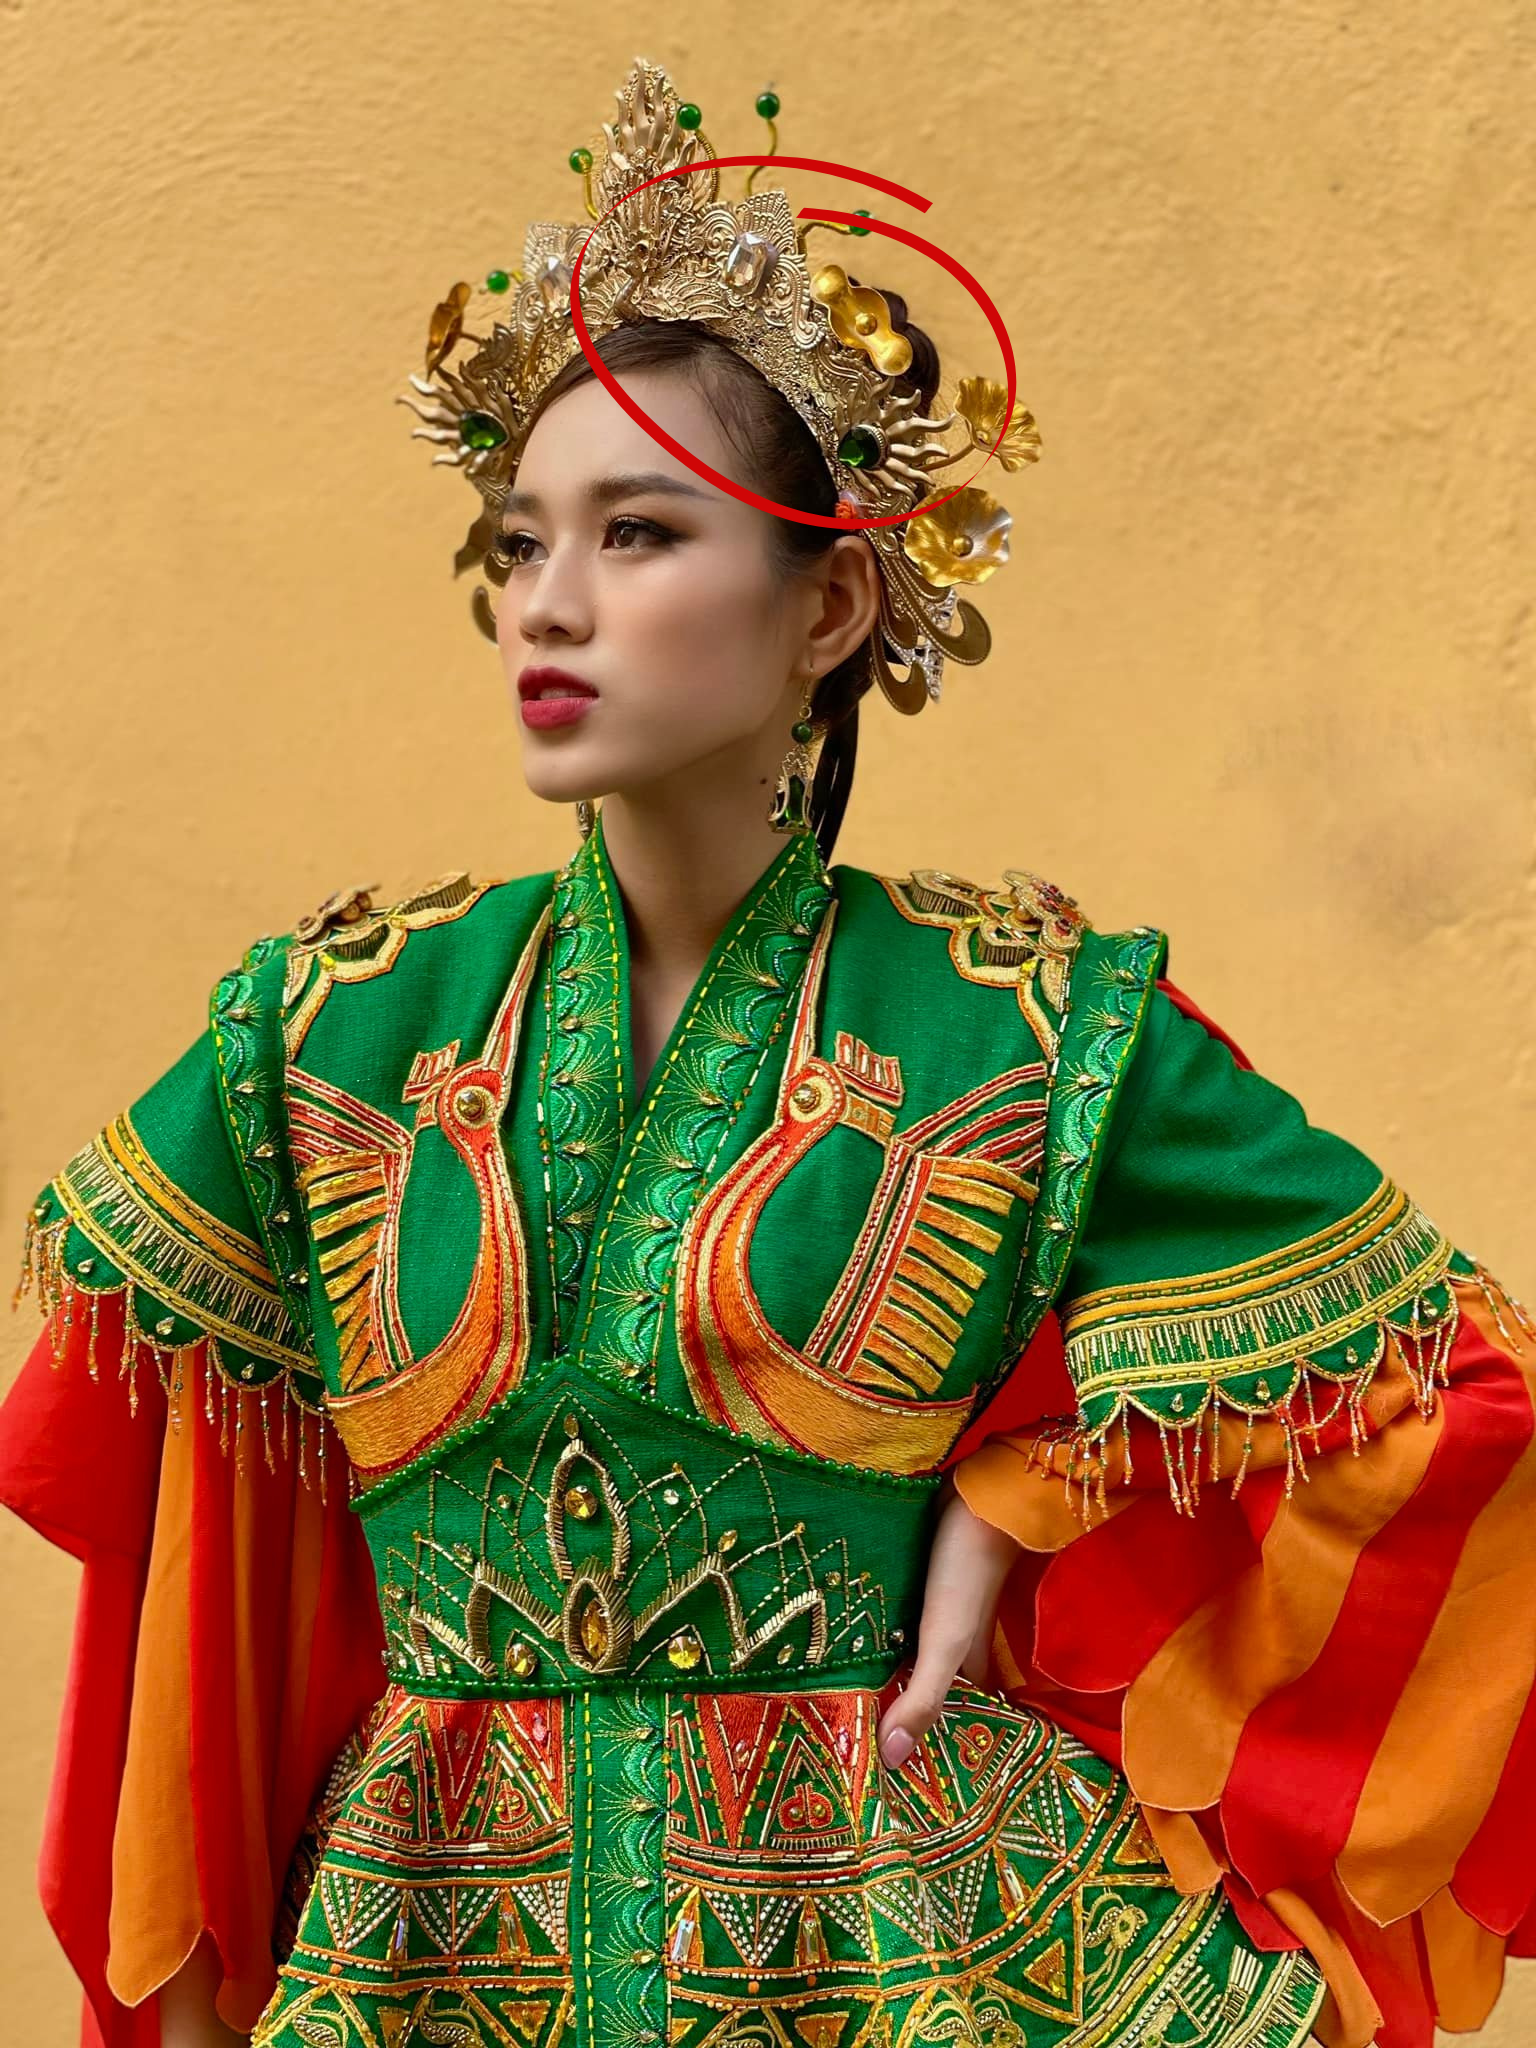 Hình ảnh mới nhất của Đỗ Thị Hà tại Miss World 2021, cô mặc trang phục Bà Triệu nhưng lỗi làm tóc khiến nhiều người nhức mắt.